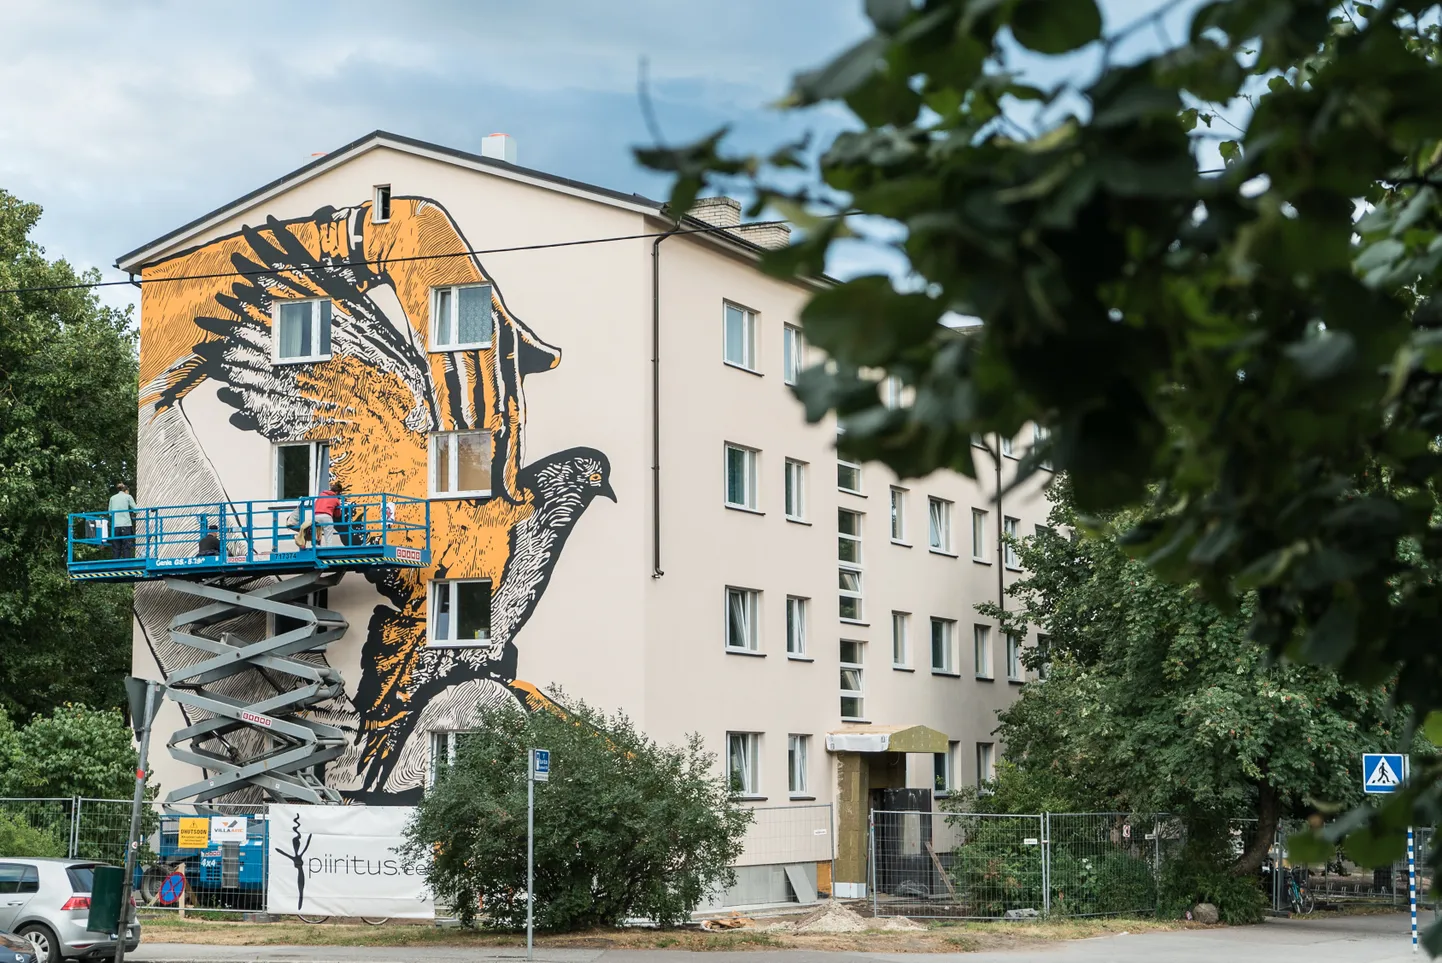 Многоквартирный дом в Тарту. Иллюстративный снимок.